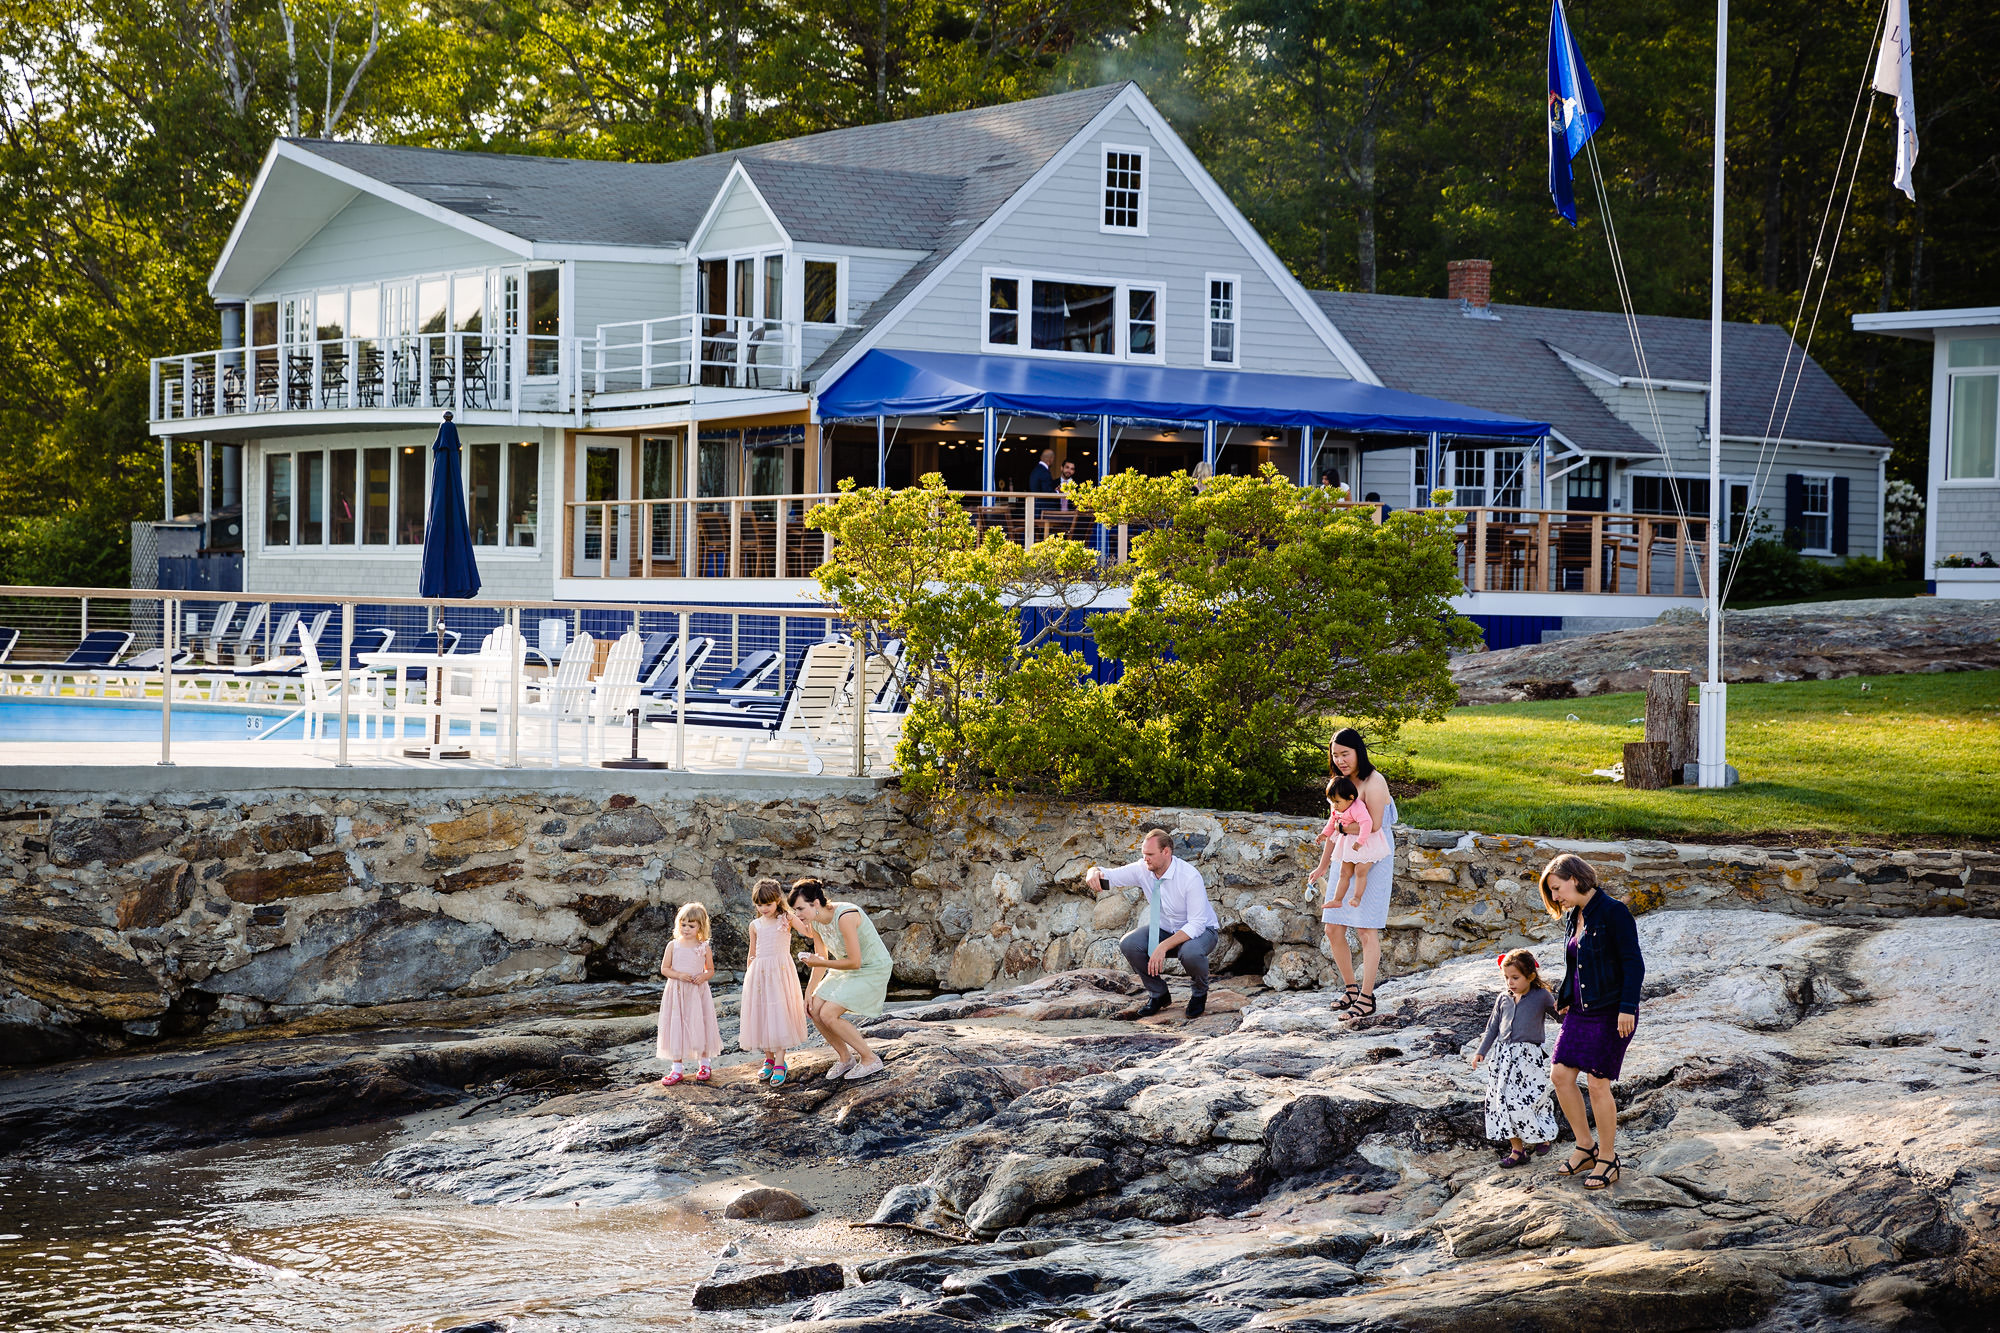 Linekin Bay Resort in Boothbay Harbor, Maine